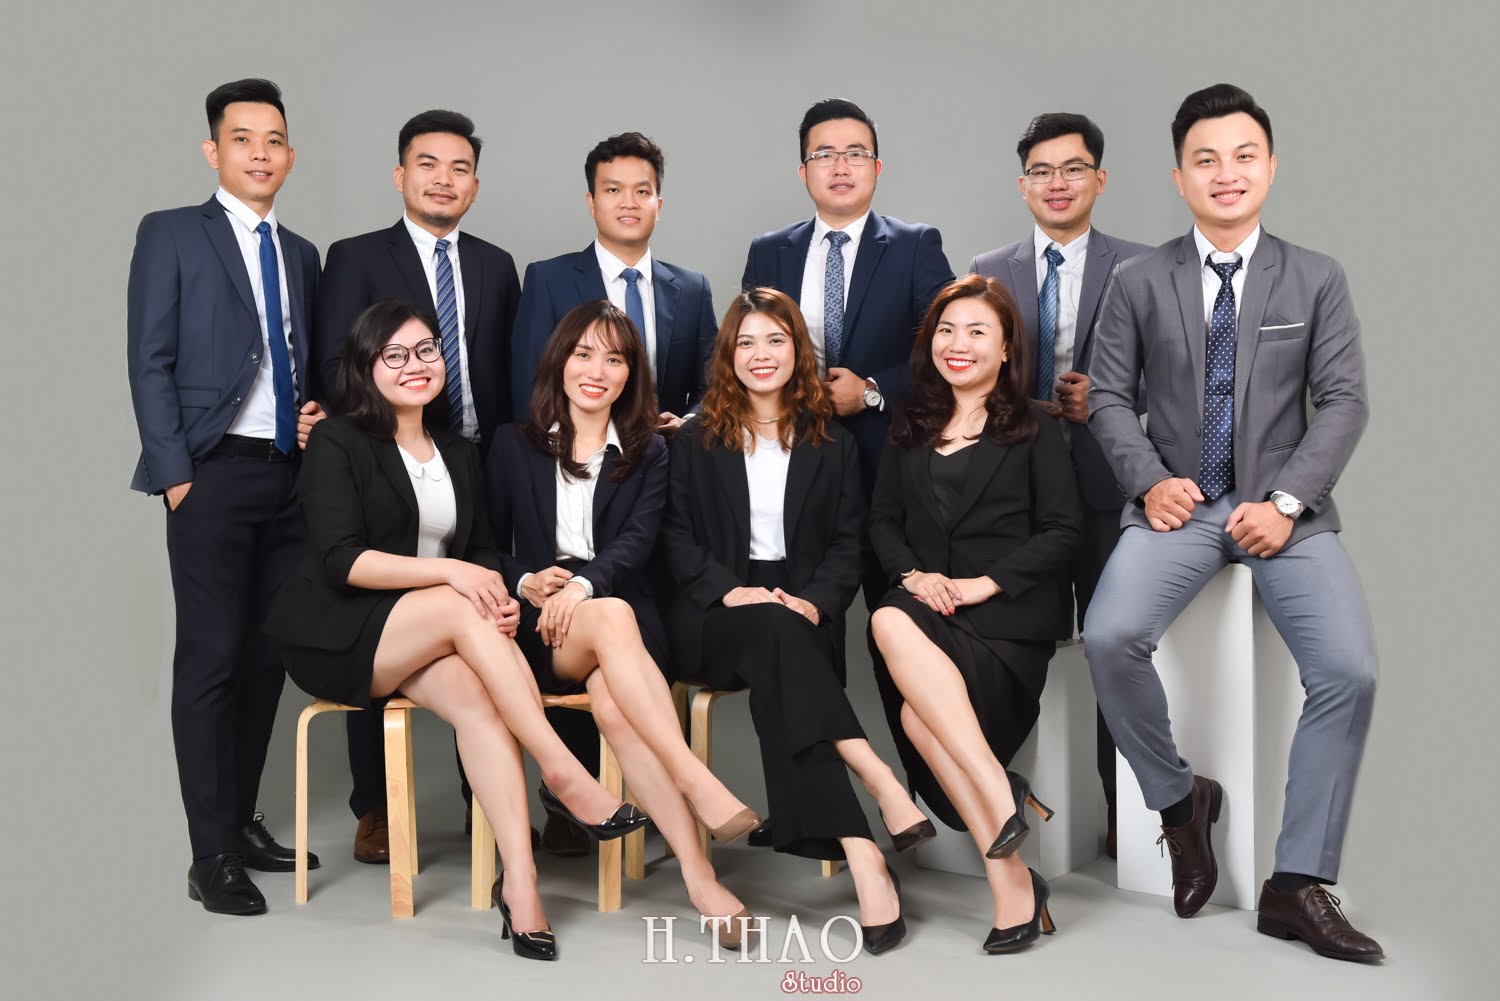 Anh profile cong ty 15 - Chụp ảnh profile cho đội nhóm sale ngân hàng - HThao Studio